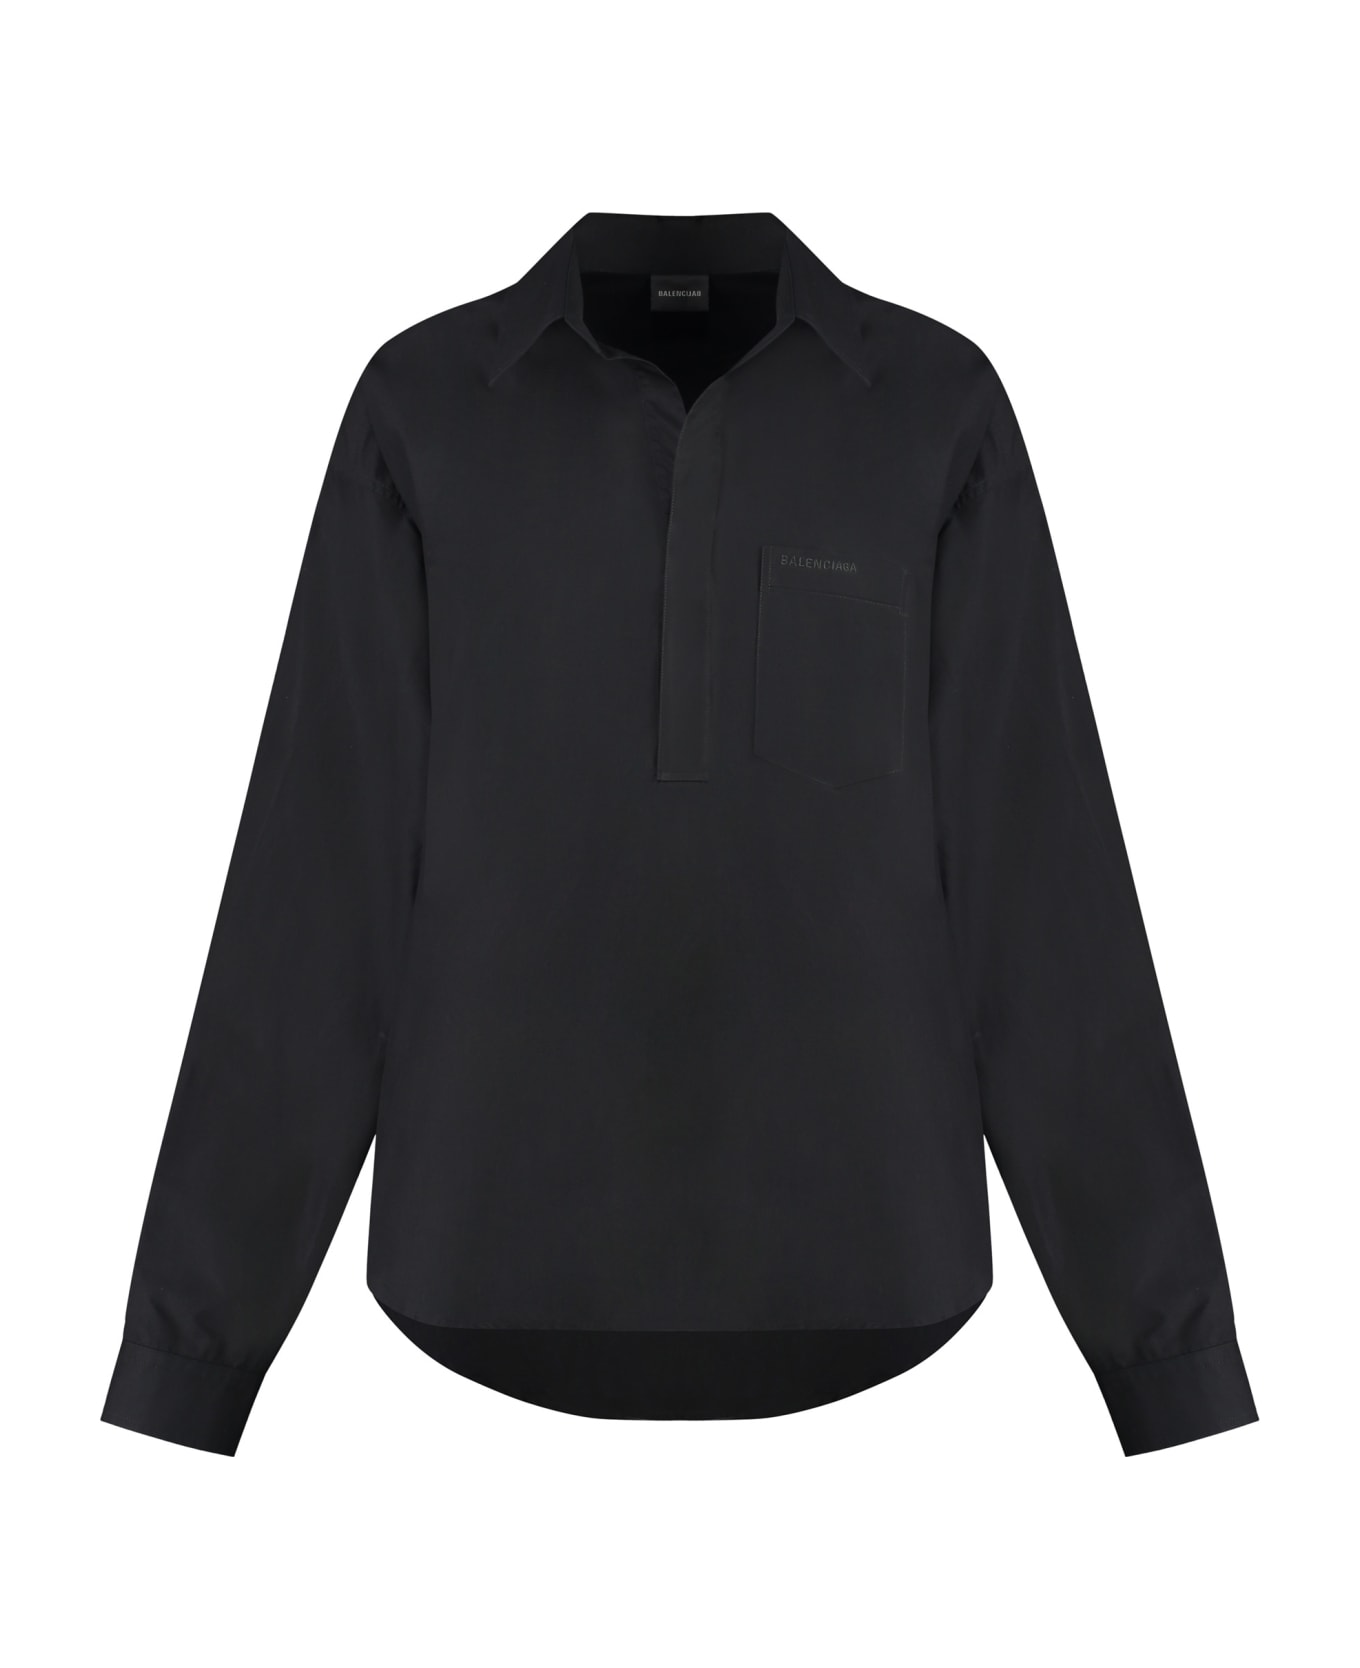 Balenciaga Oversize Shirt - black シャツ